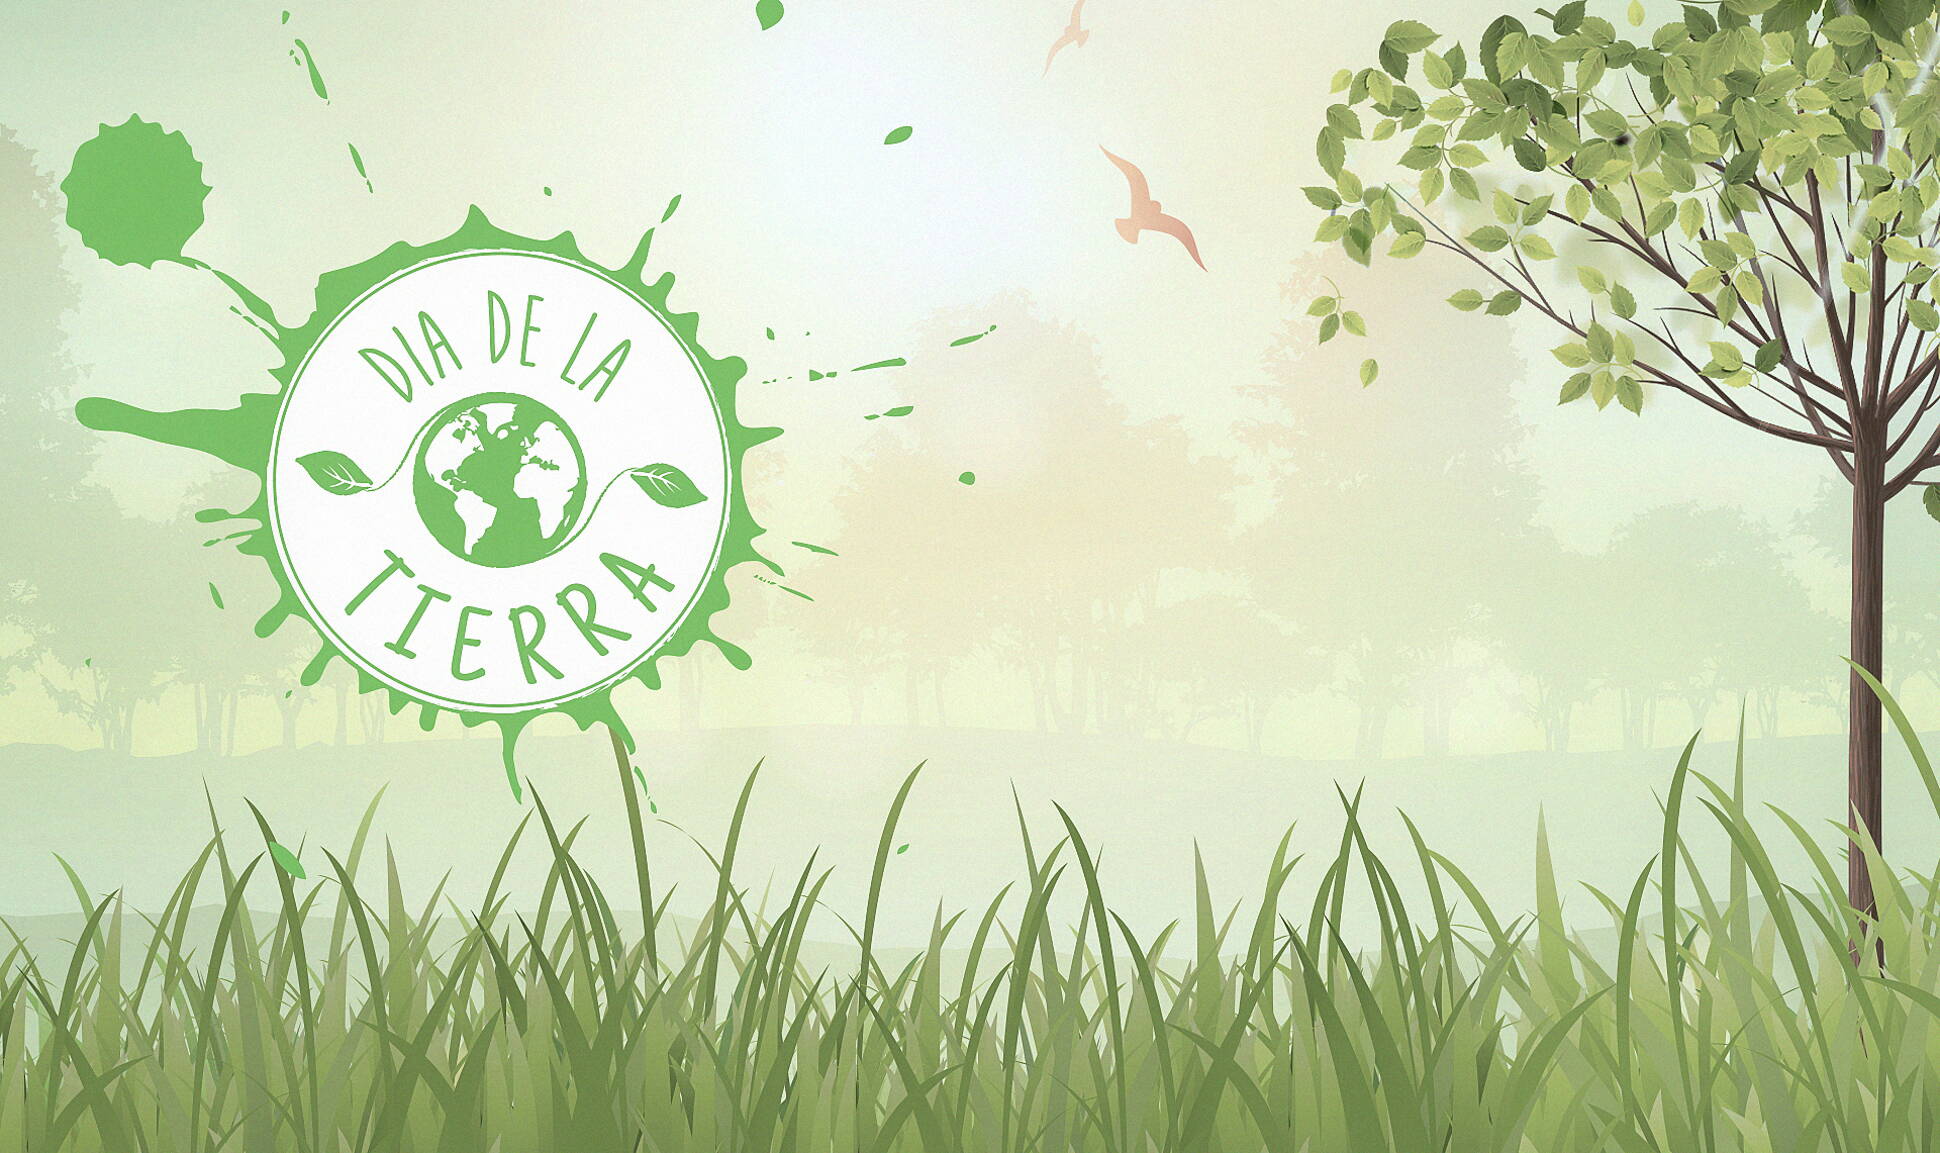 Sumate a la campaña en Facebook: Cuidemos el ambiente, cuidemos nuestra tierra